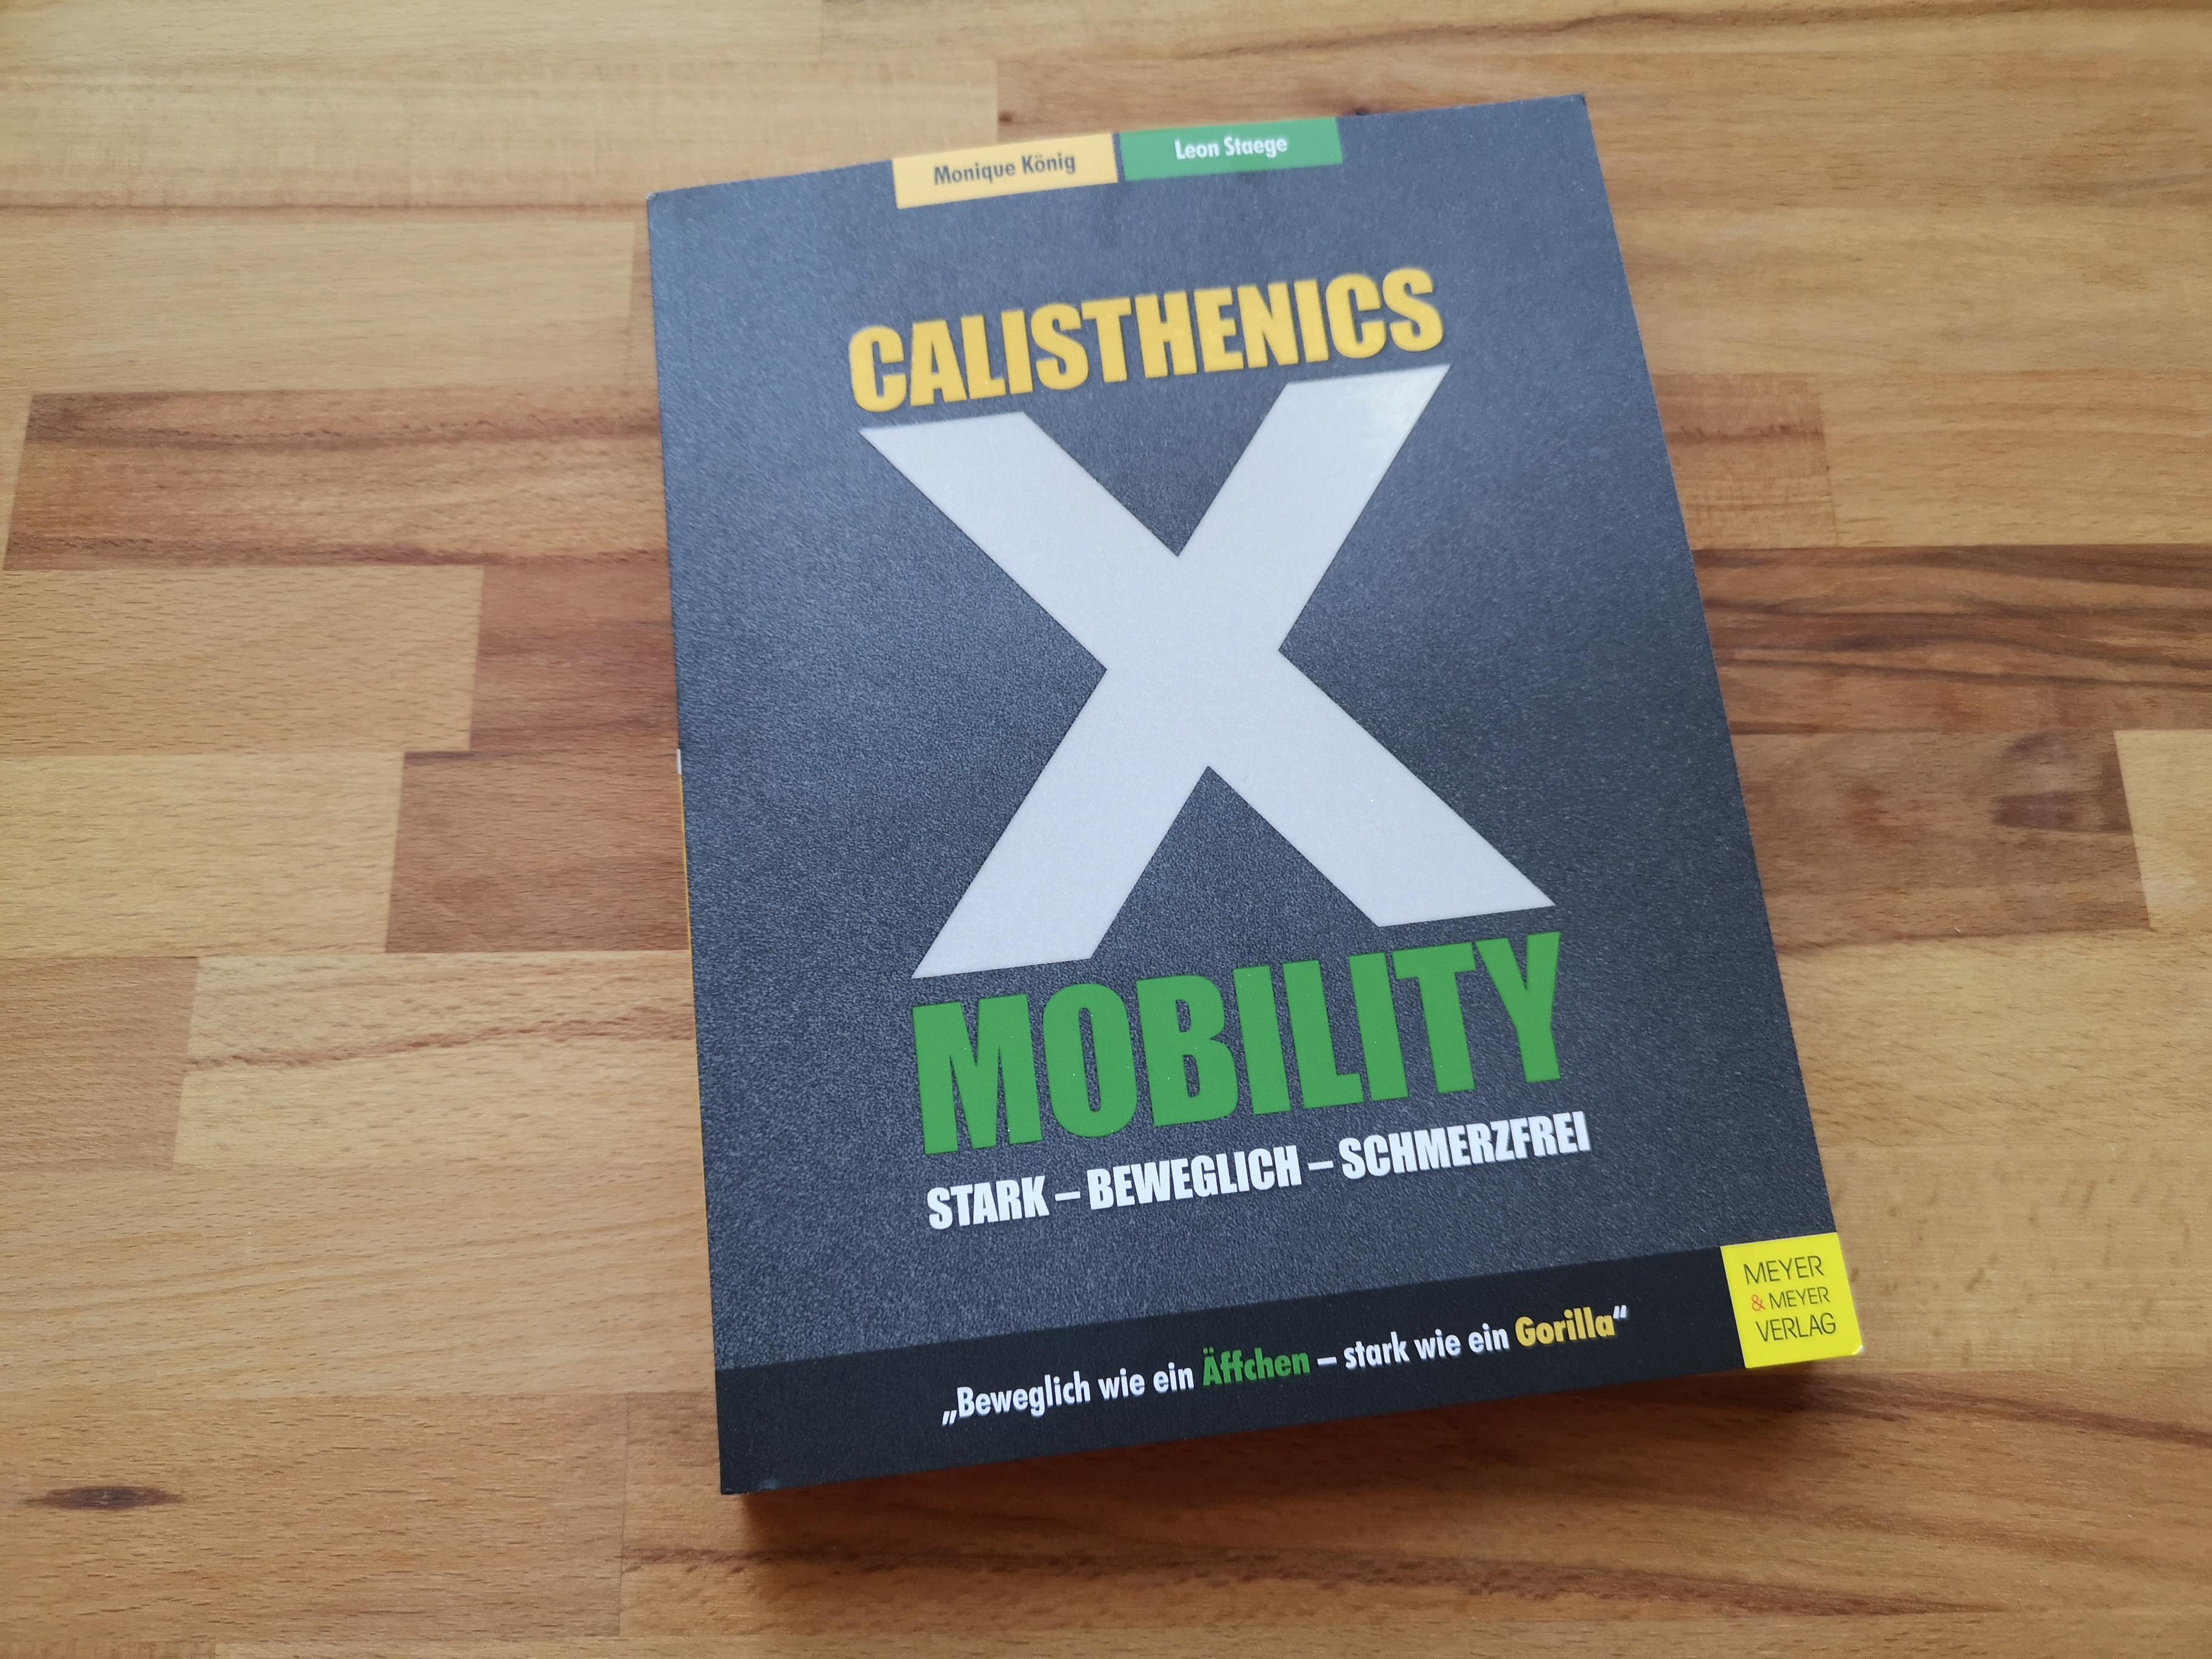 Calisthenics X Mobility: Stark - Beweglich - Schmerzfrei